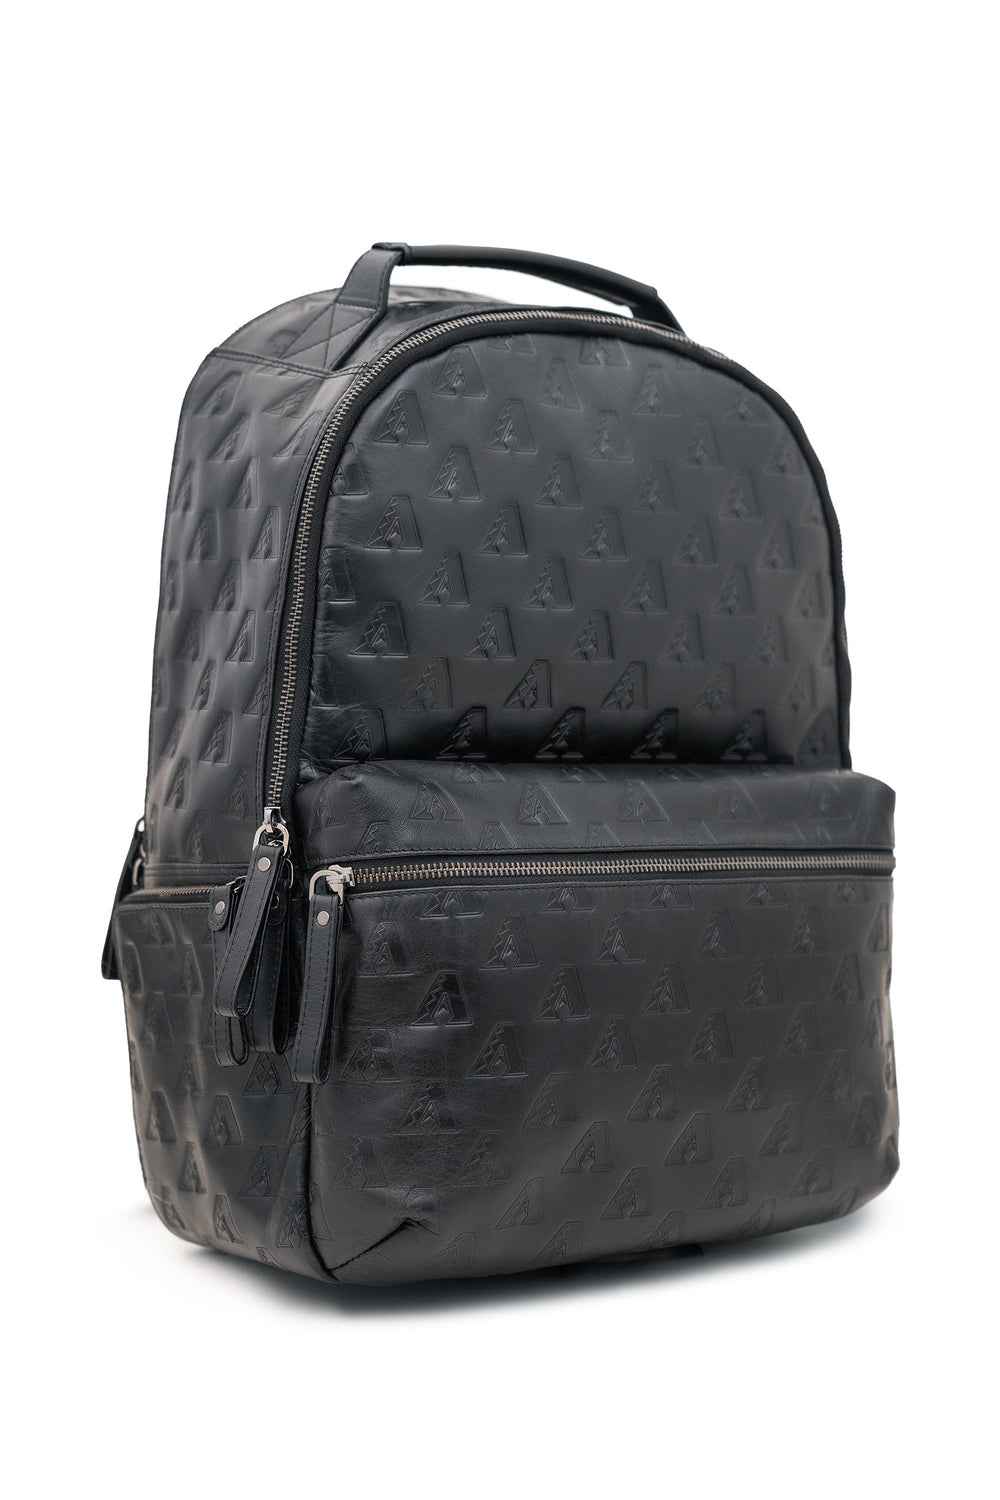 Arizona Diamondbacks Leather Backpack - Bags